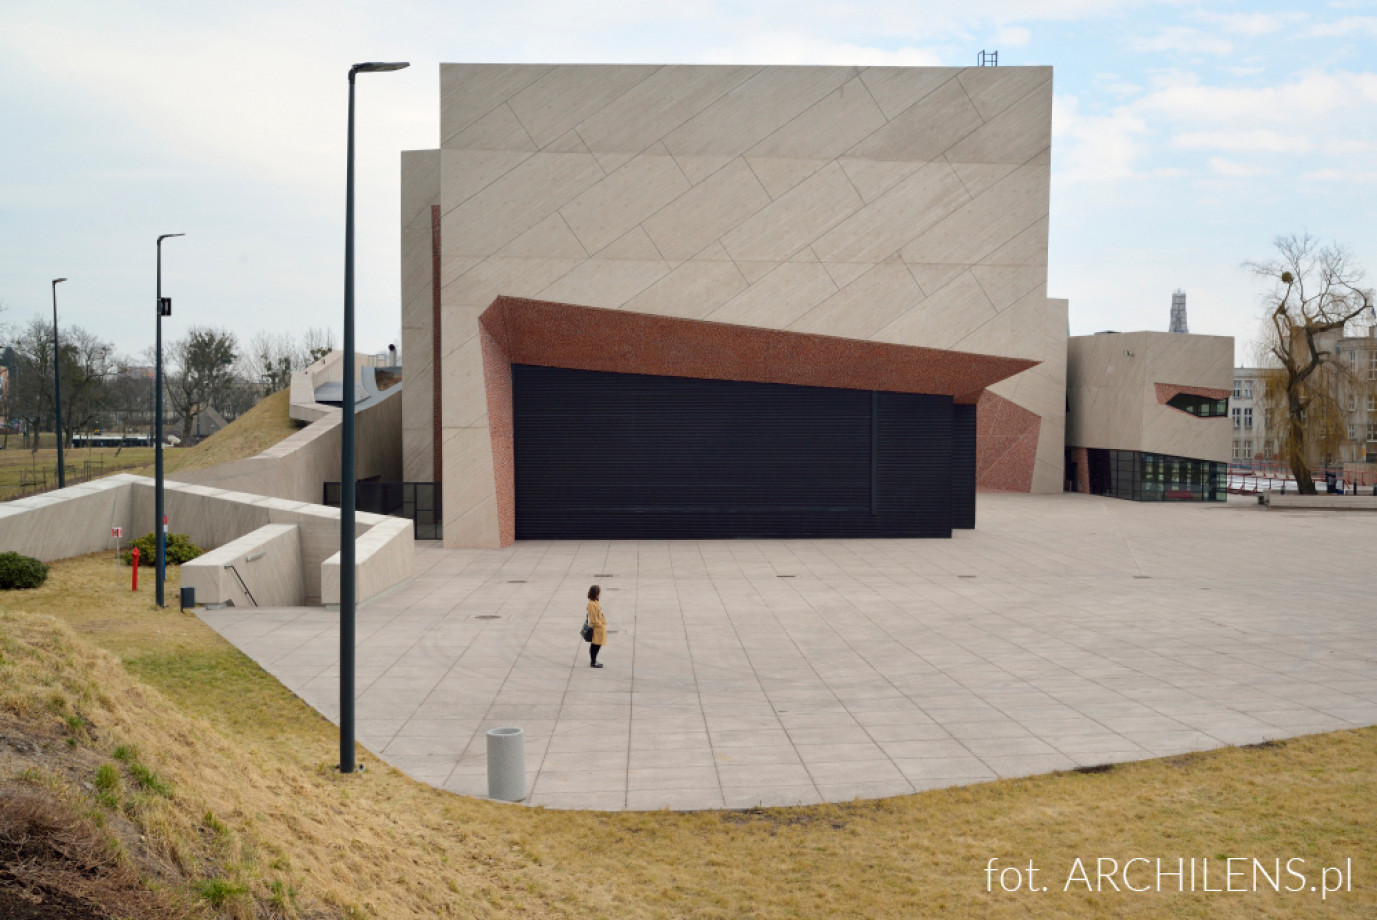 zdjęcia warszawa fotograf archilens-lukasz-nowosadzki portfolio zdjecia architektury budynkow